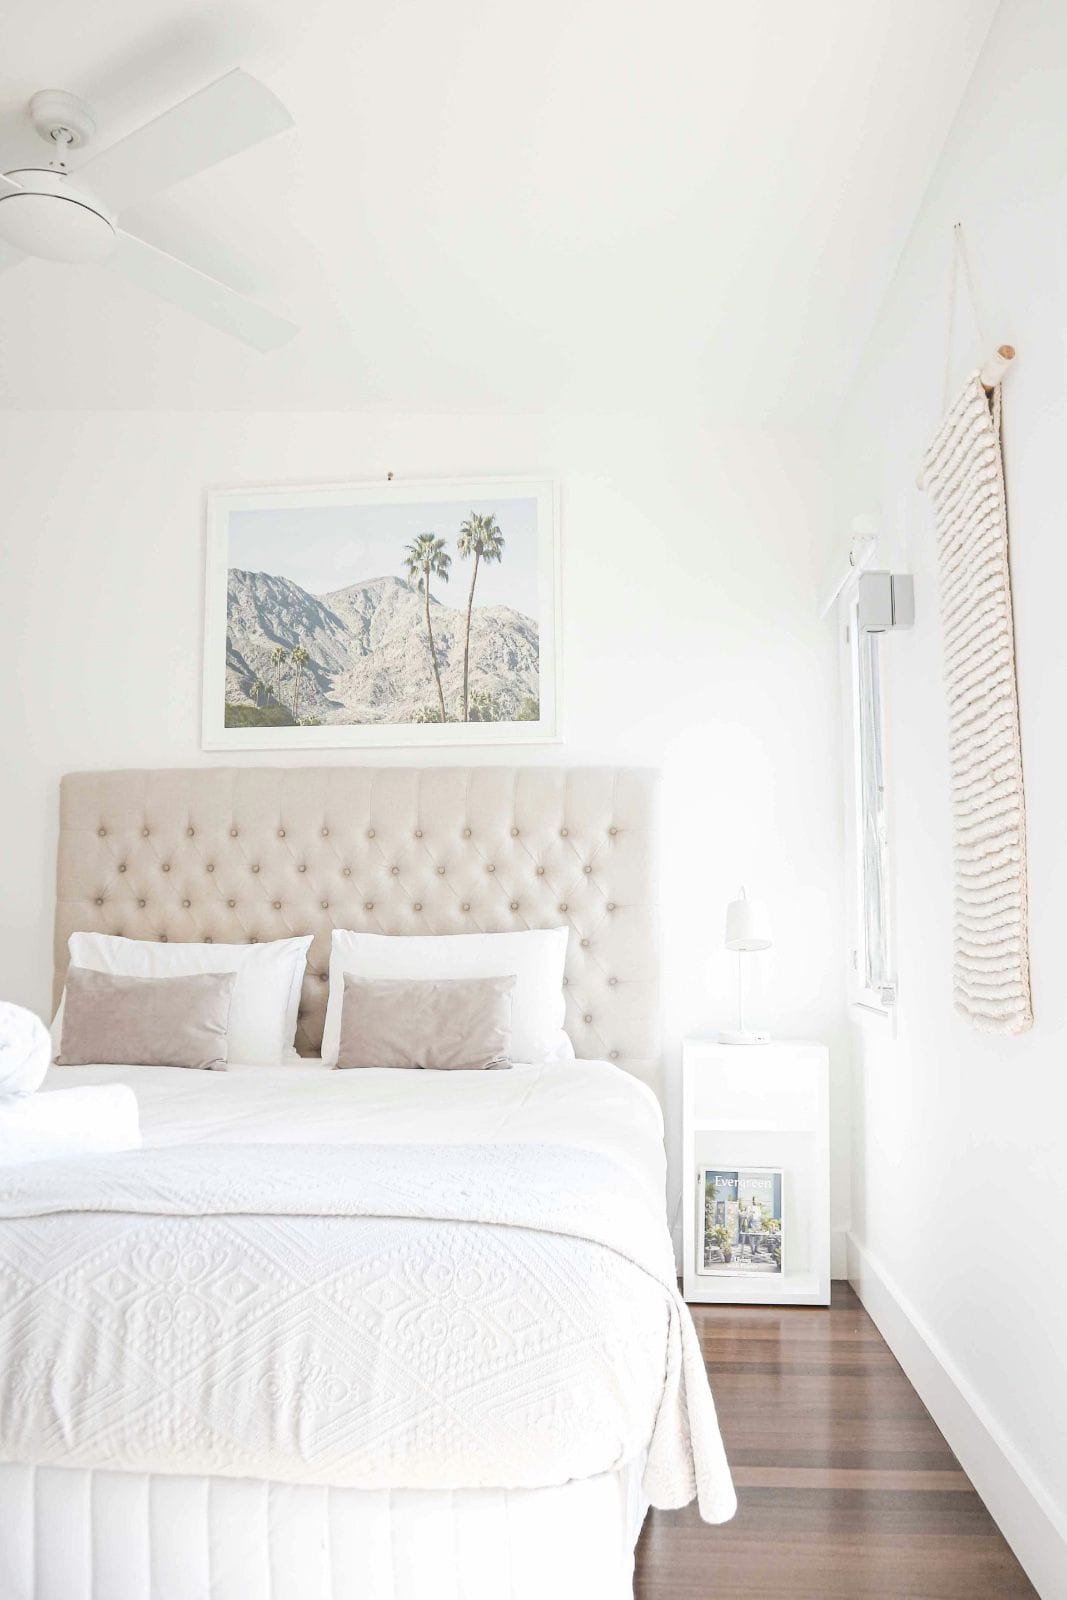 un coin de chambre apaisant avec une literie blanche, une photo de palmiers et une moquette rose pâle